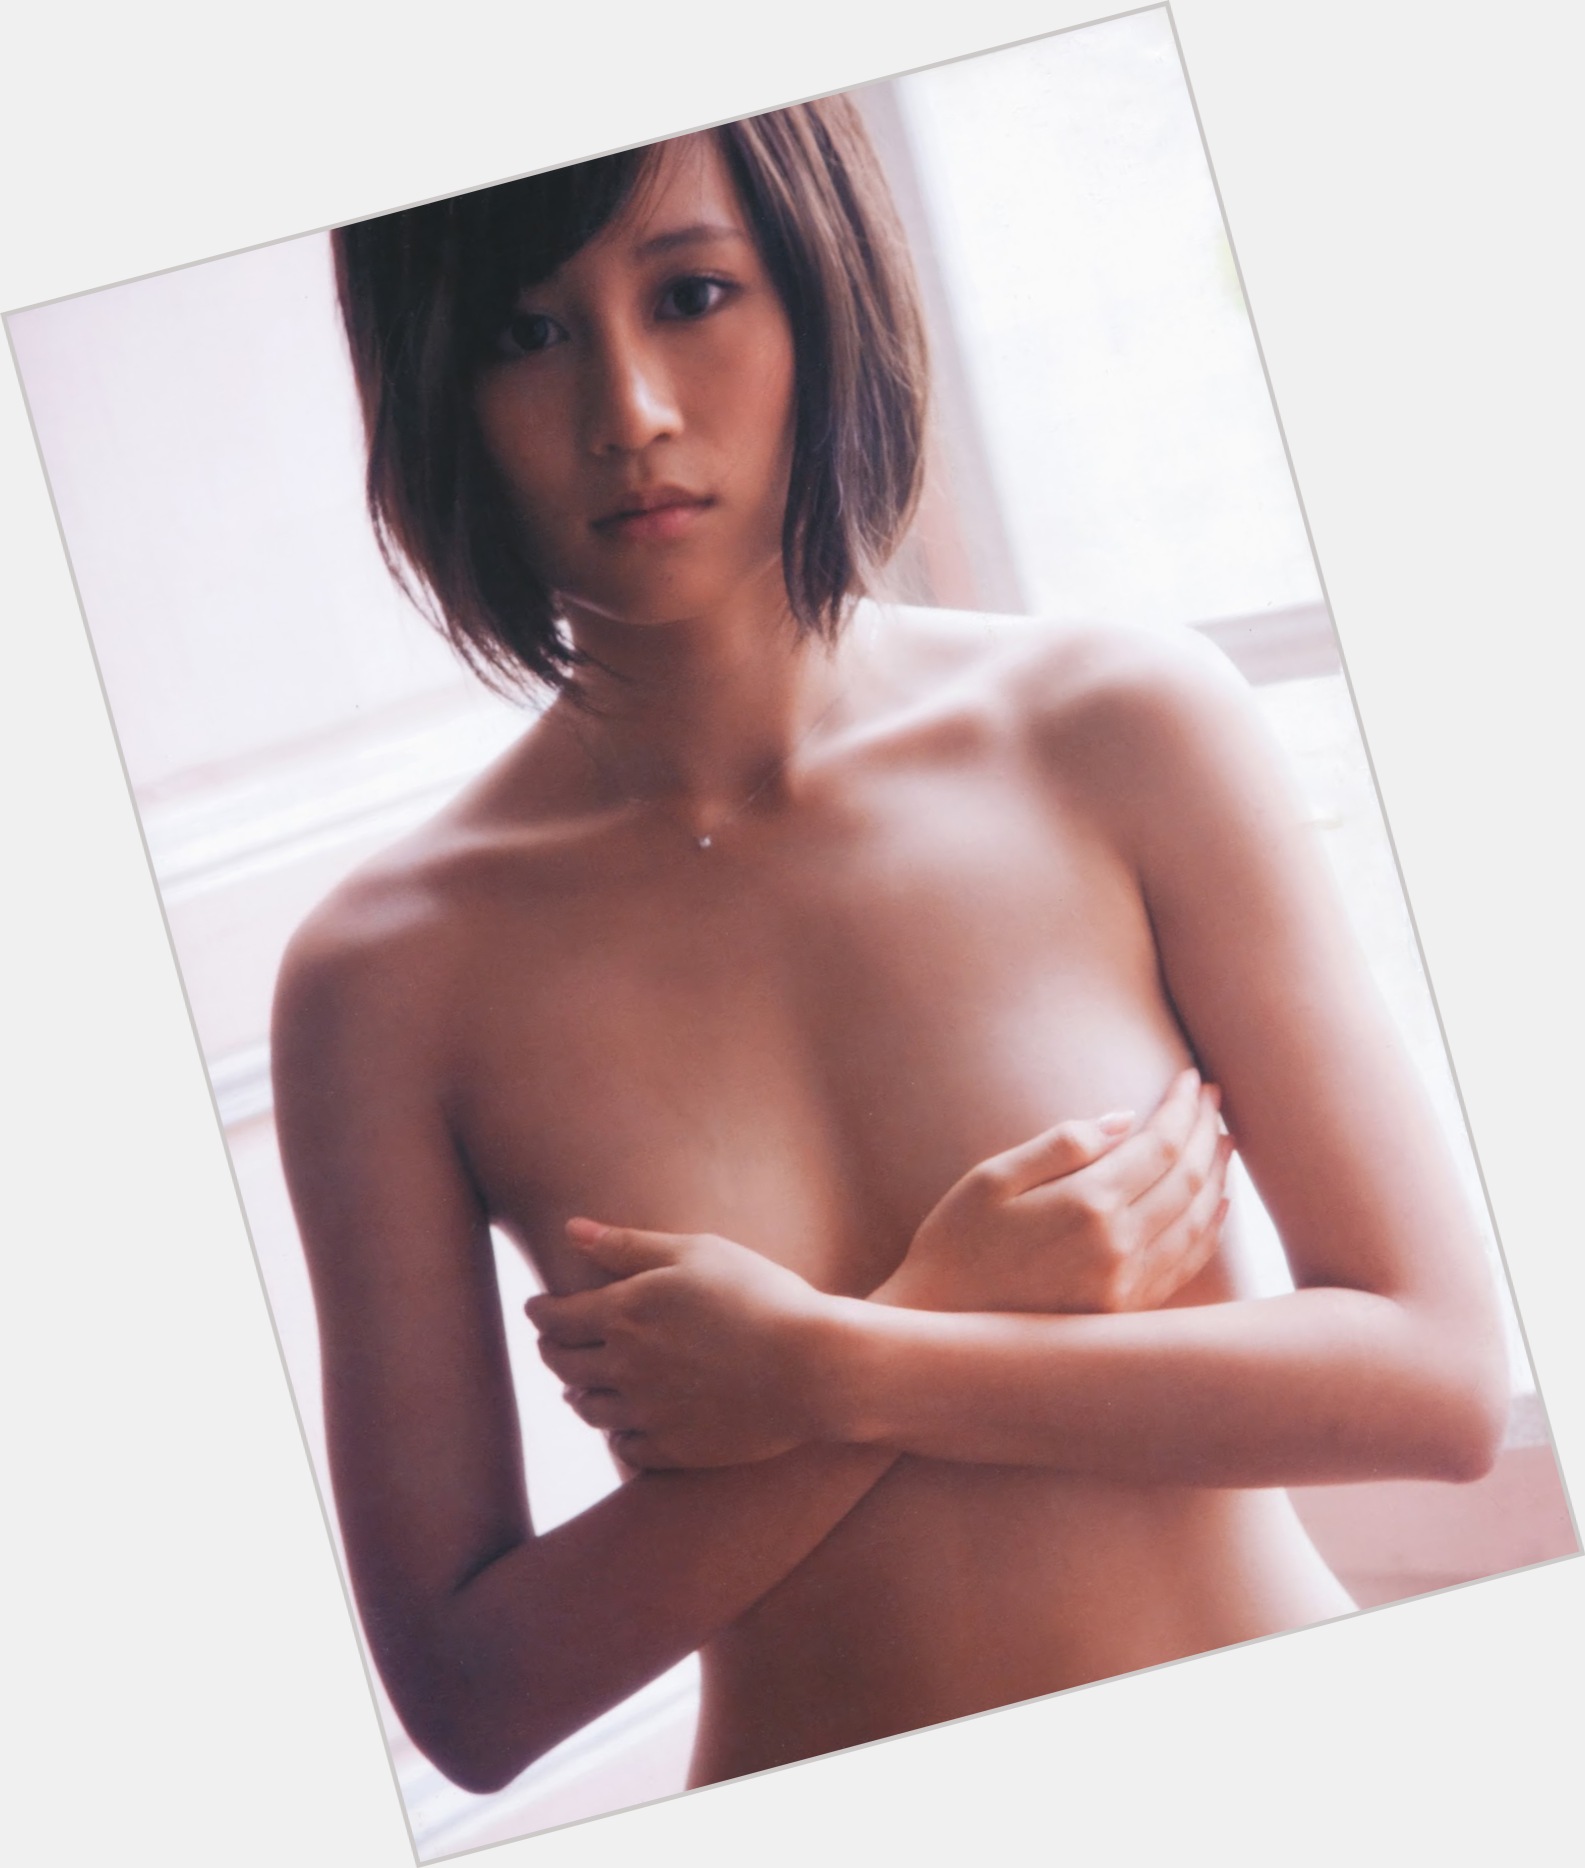 Atsuko Maeda shirtless bikini